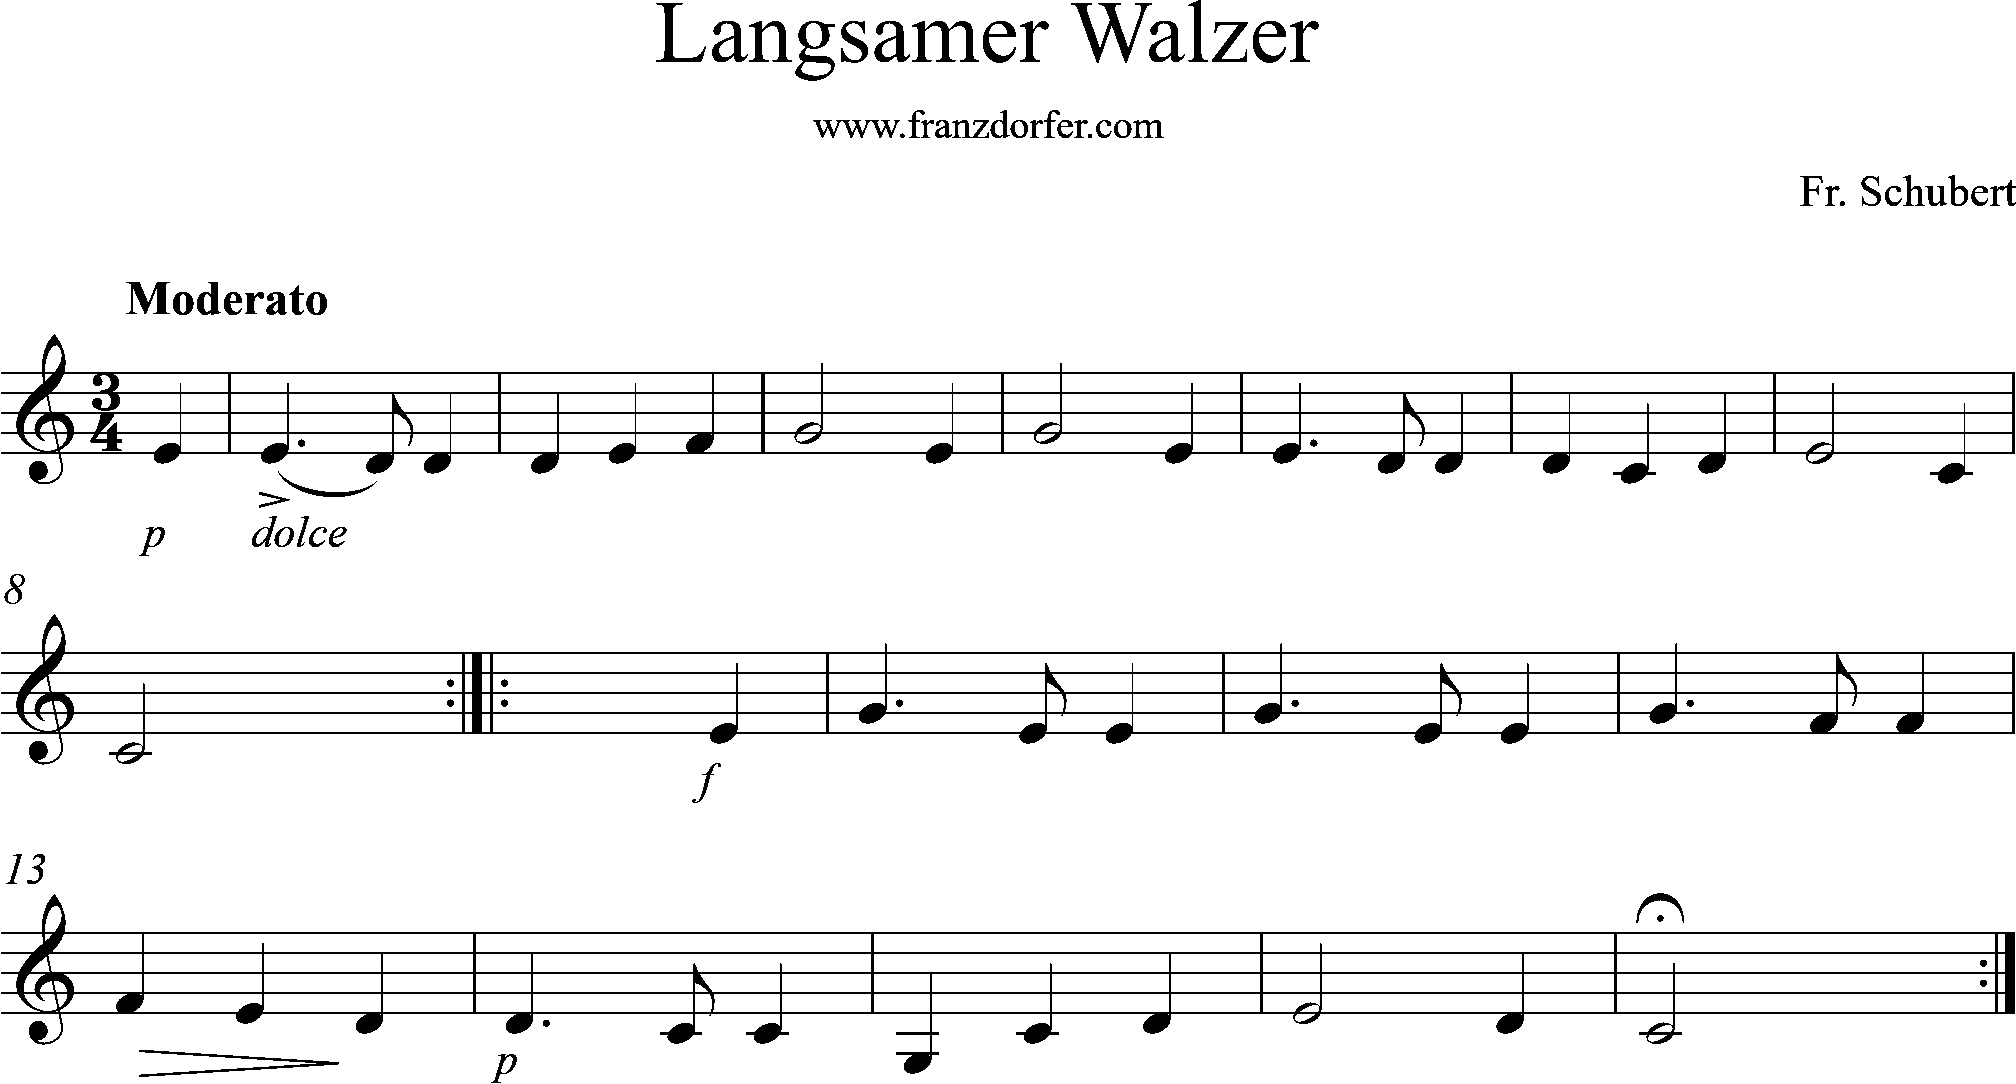 Noten, C-Dur, Langsamer Walzer, Schubert